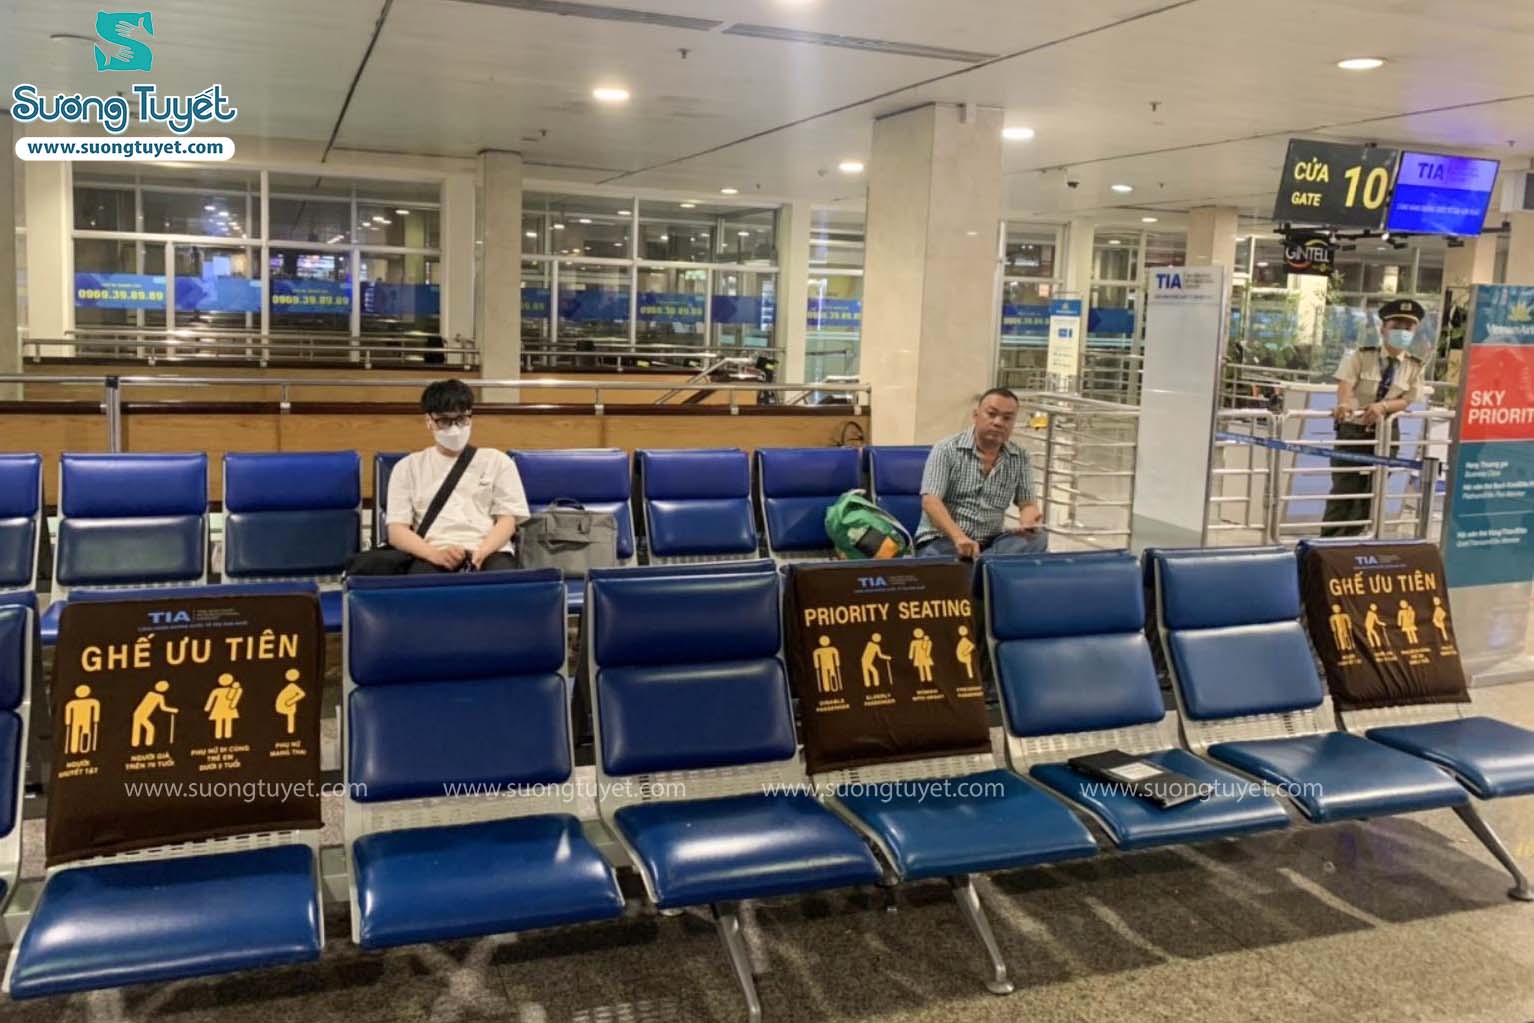 Hình ảnh áo ghế sân bay Tân Sơn Nhất mà Sương Tuyết vừa cung cấp.